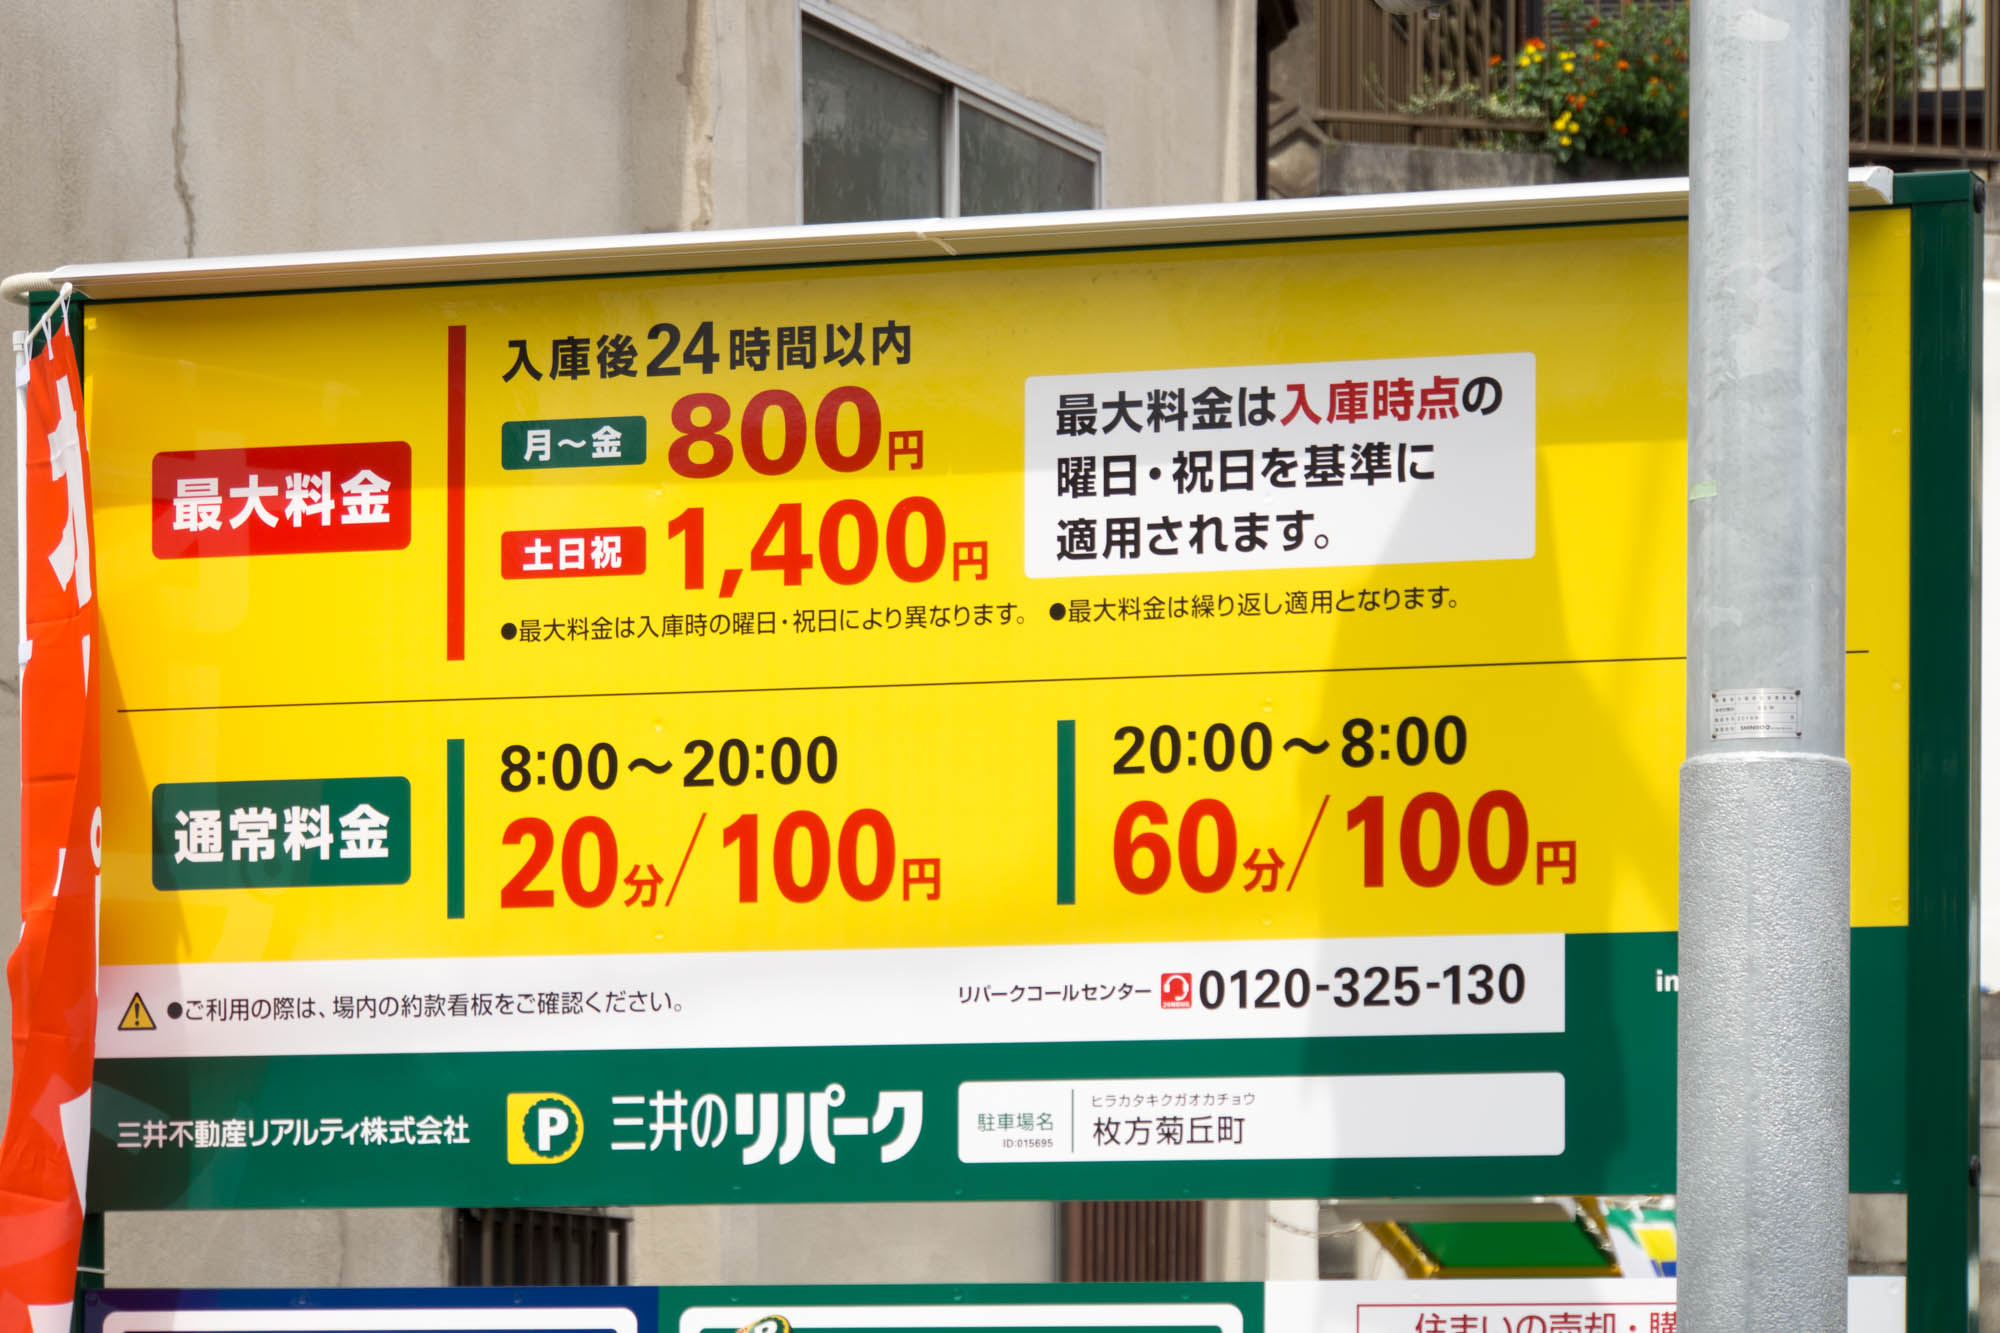 枚方つーしん菊丘町にコインパーキング「三井のリパーク」ができてる。ひらパー利用時に使えるかも